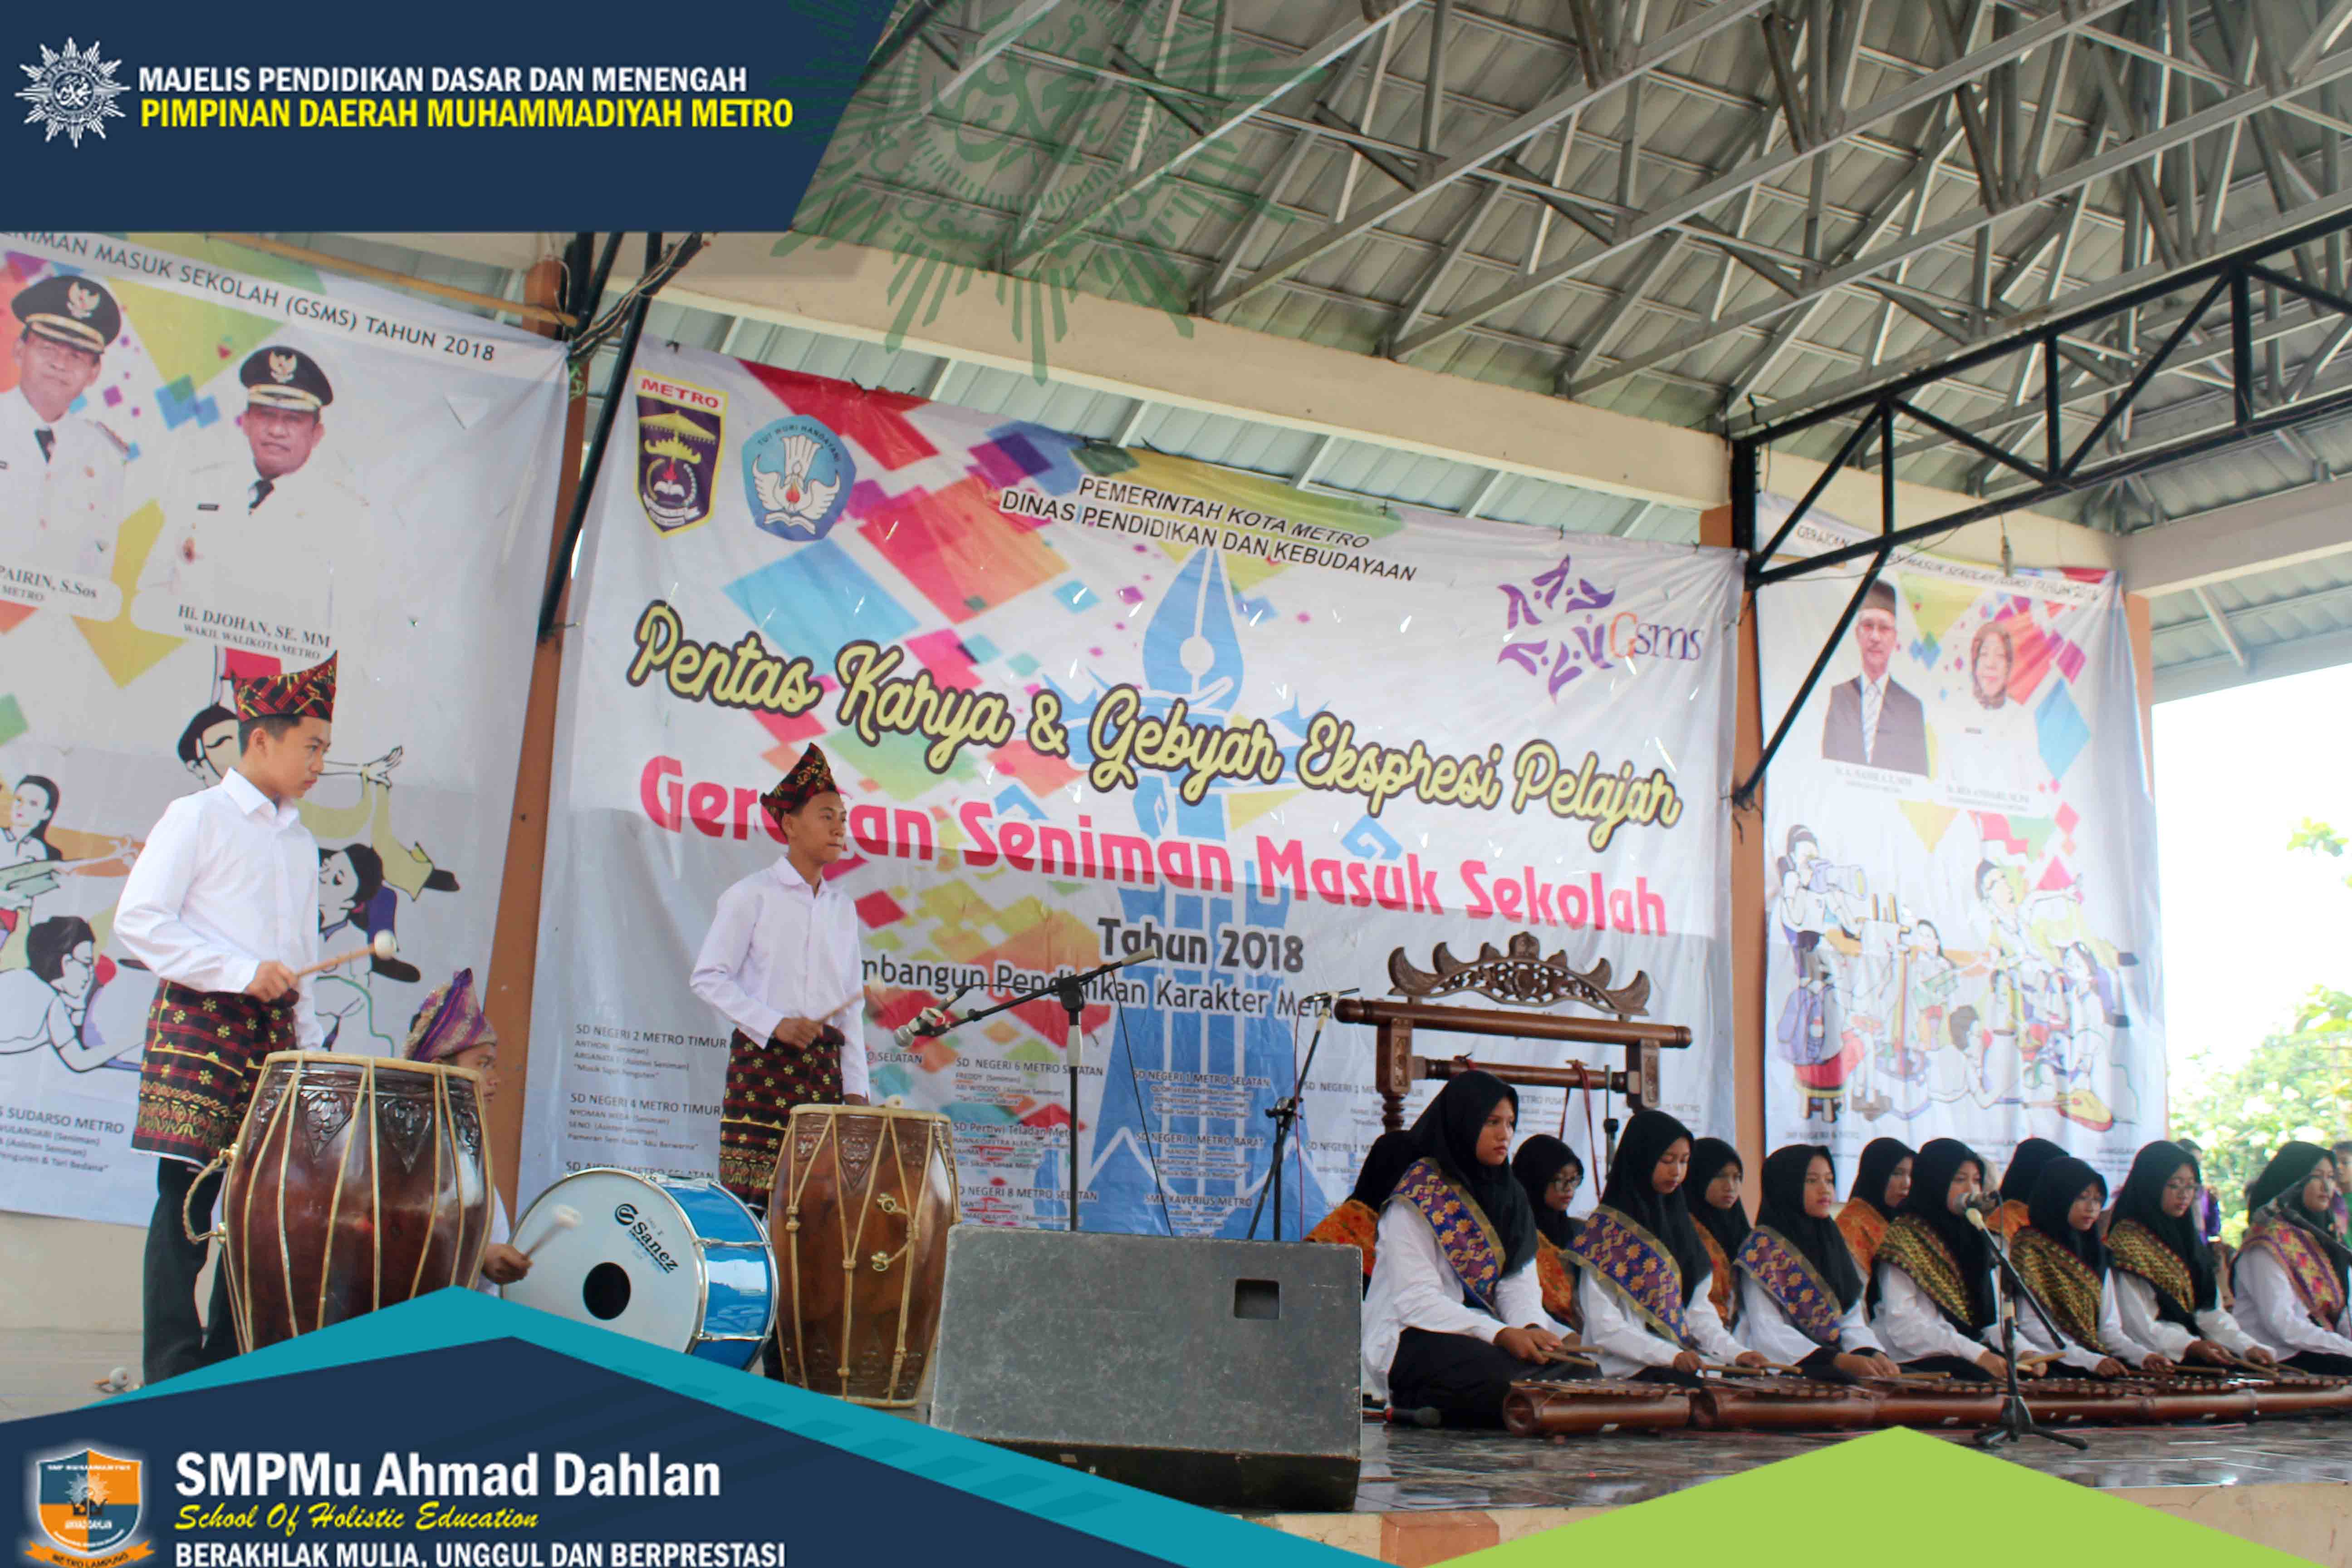 SMP Mu Ahmad Dahlan Kembali Tampil Mengangumkan Pada Pentas Seni GSMS